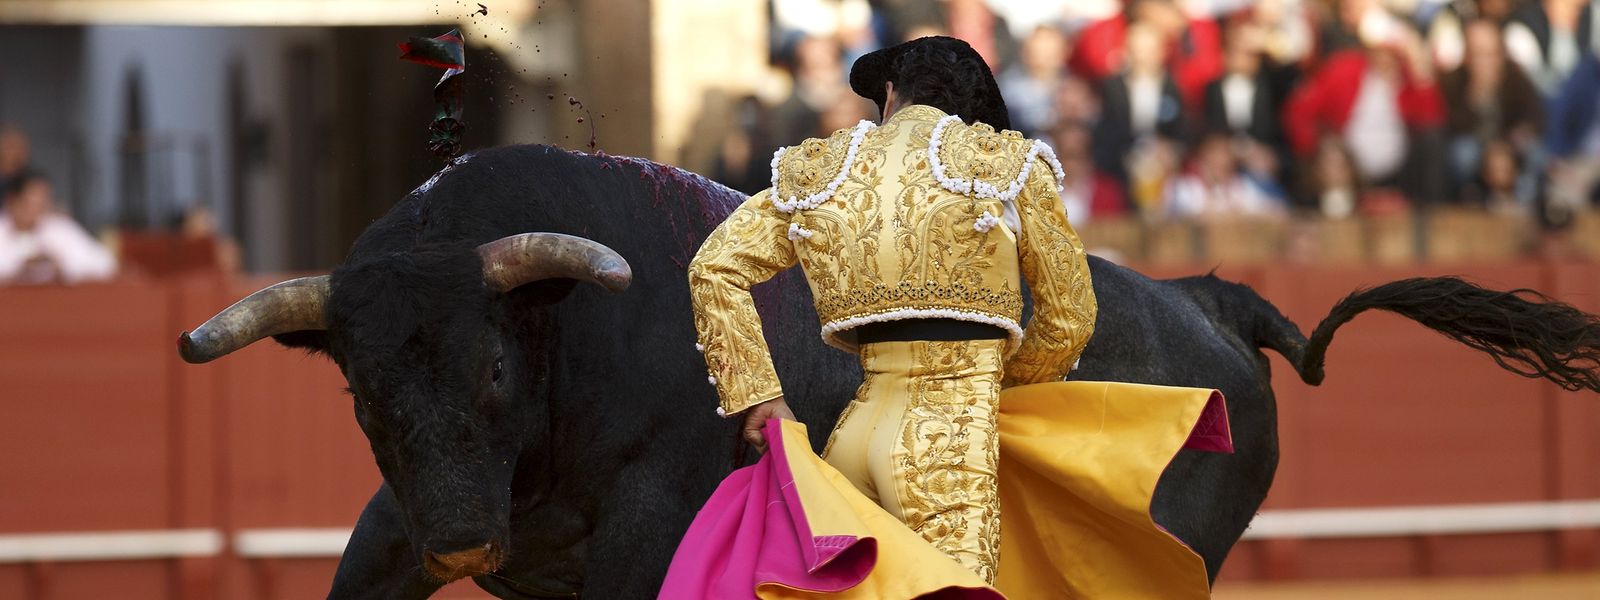 Im Süden Frankreichs haben Stierkämpfe eine lange Tradition und weiterhin viele Anhänger - im Parlament in Paris wird nun ein Vorstoß unternommen, das blutige Brauchtum zu verbieten.